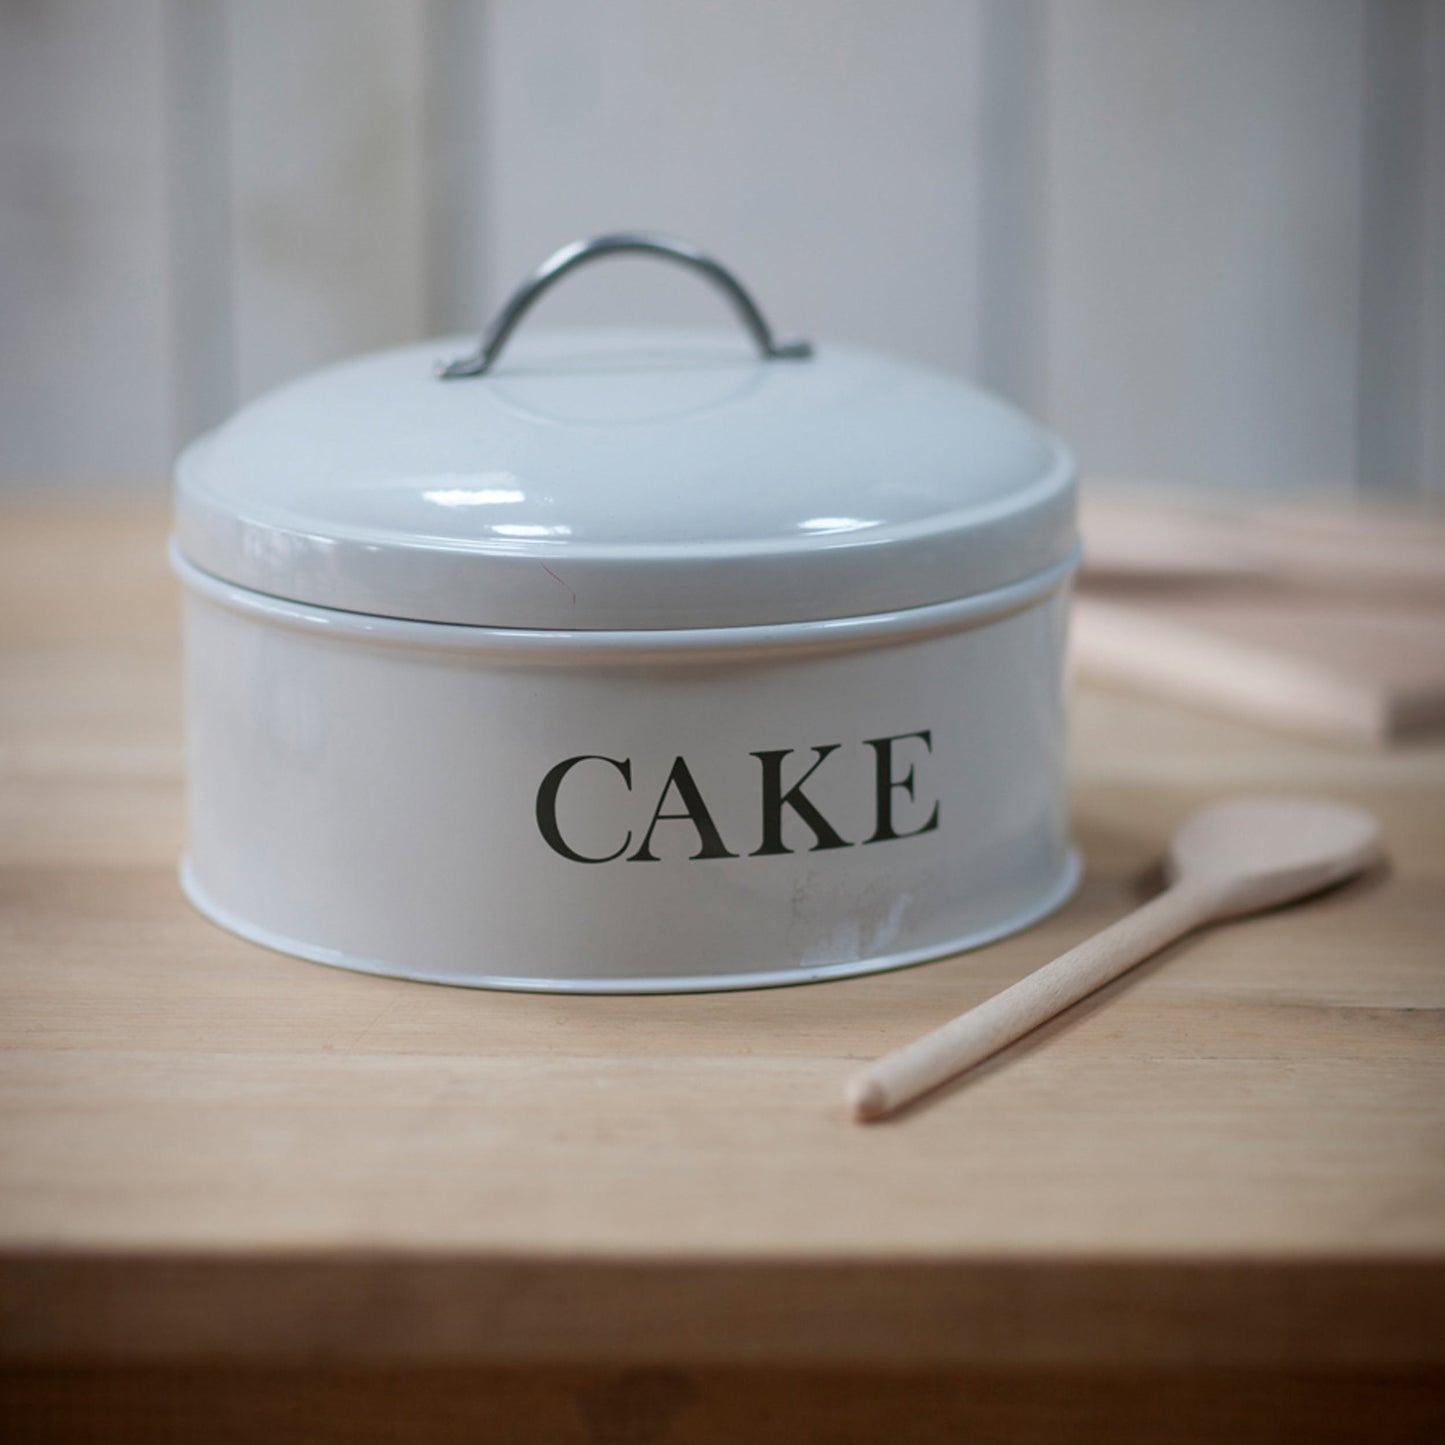 Off-White Round Cake Tin